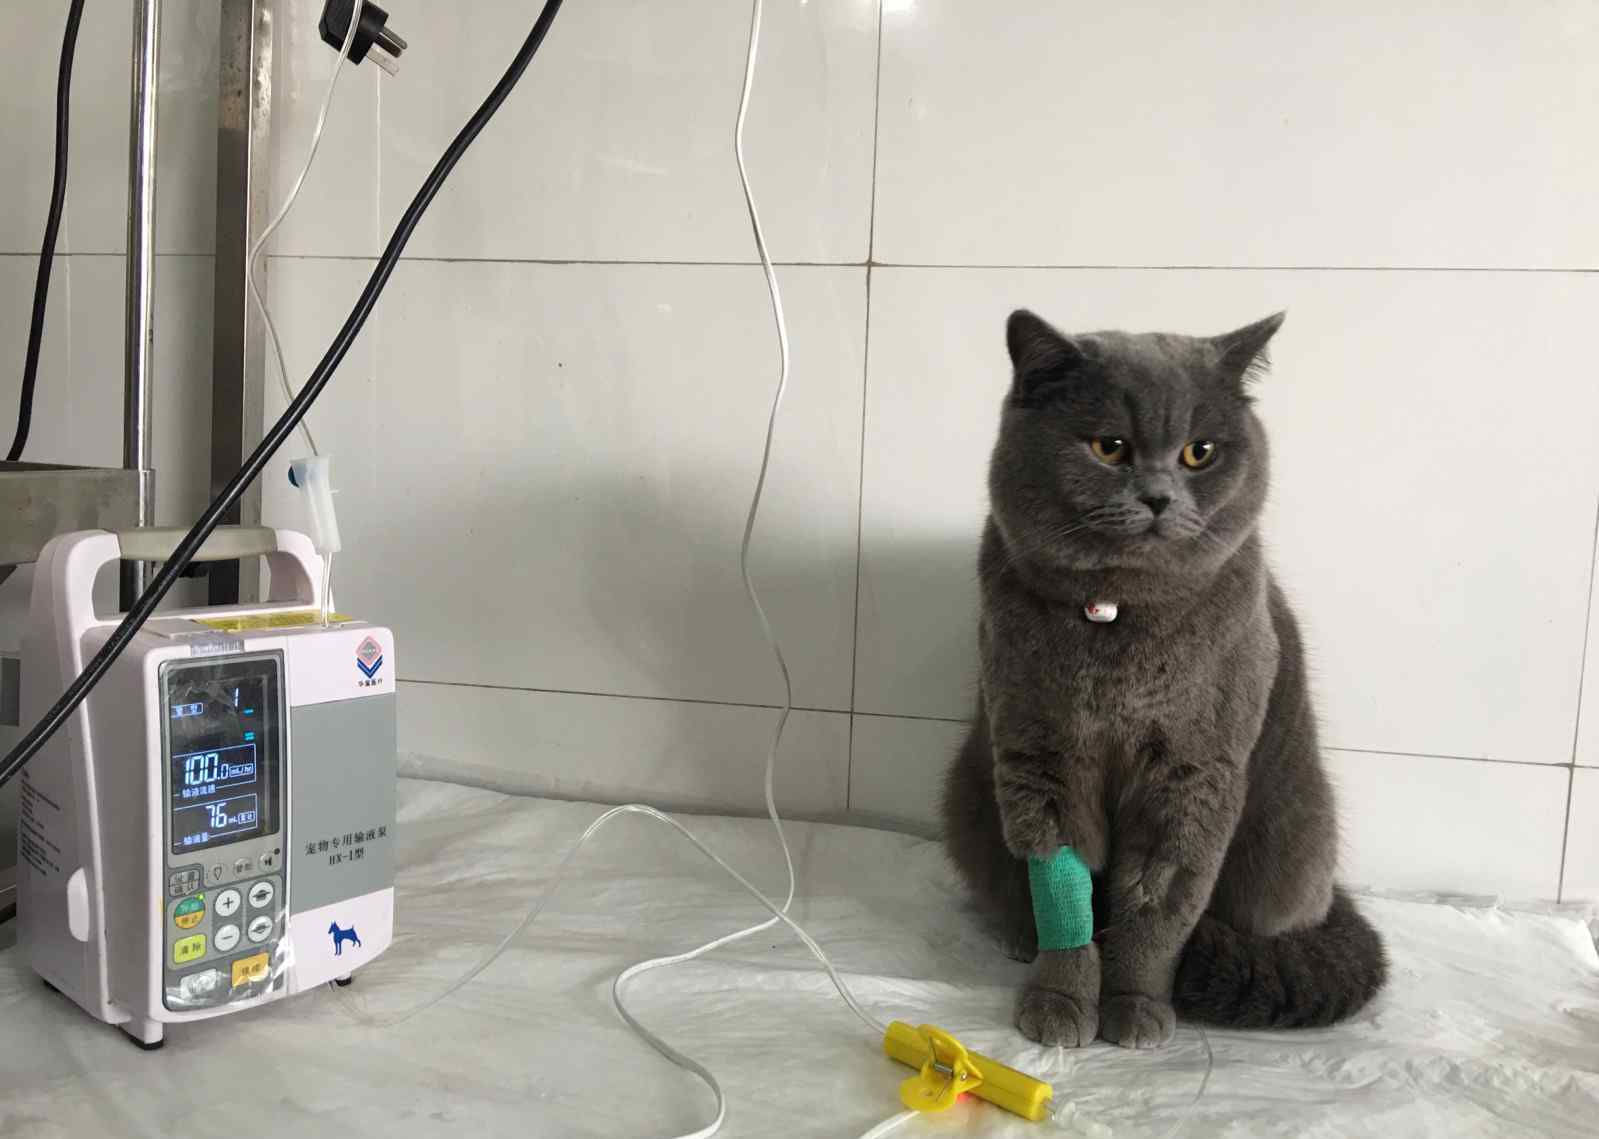 猫咪肠胃炎 从宠物医院对一只猫急性肠胃炎的治疗过程看整个社会的风气！钱确实是个好东西但不能没有底线地追求利益！